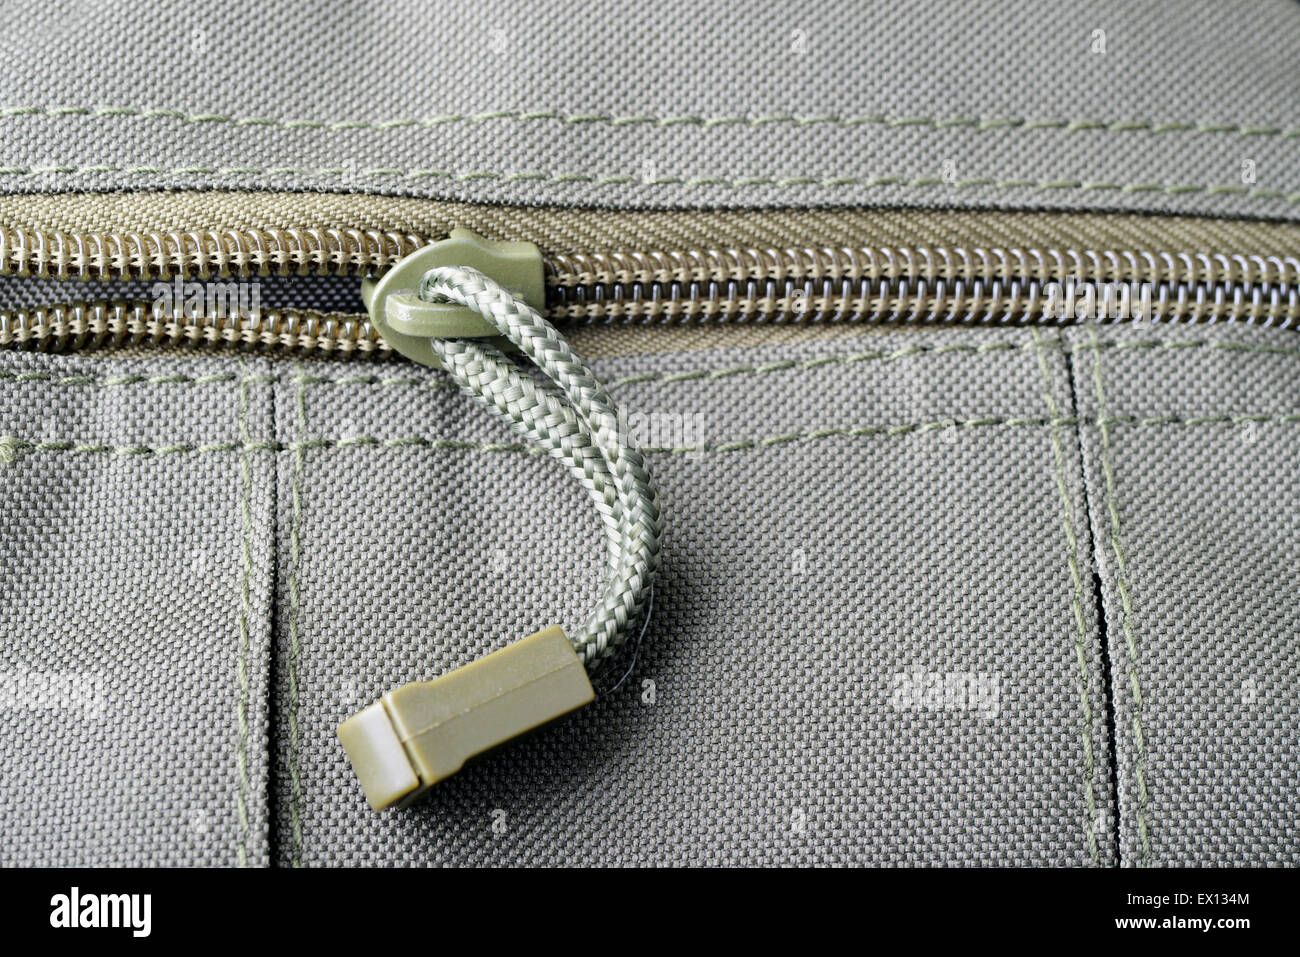 Aufnahme eines Reißverschlusses auf eine militärische Tasche hautnah Stockfoto